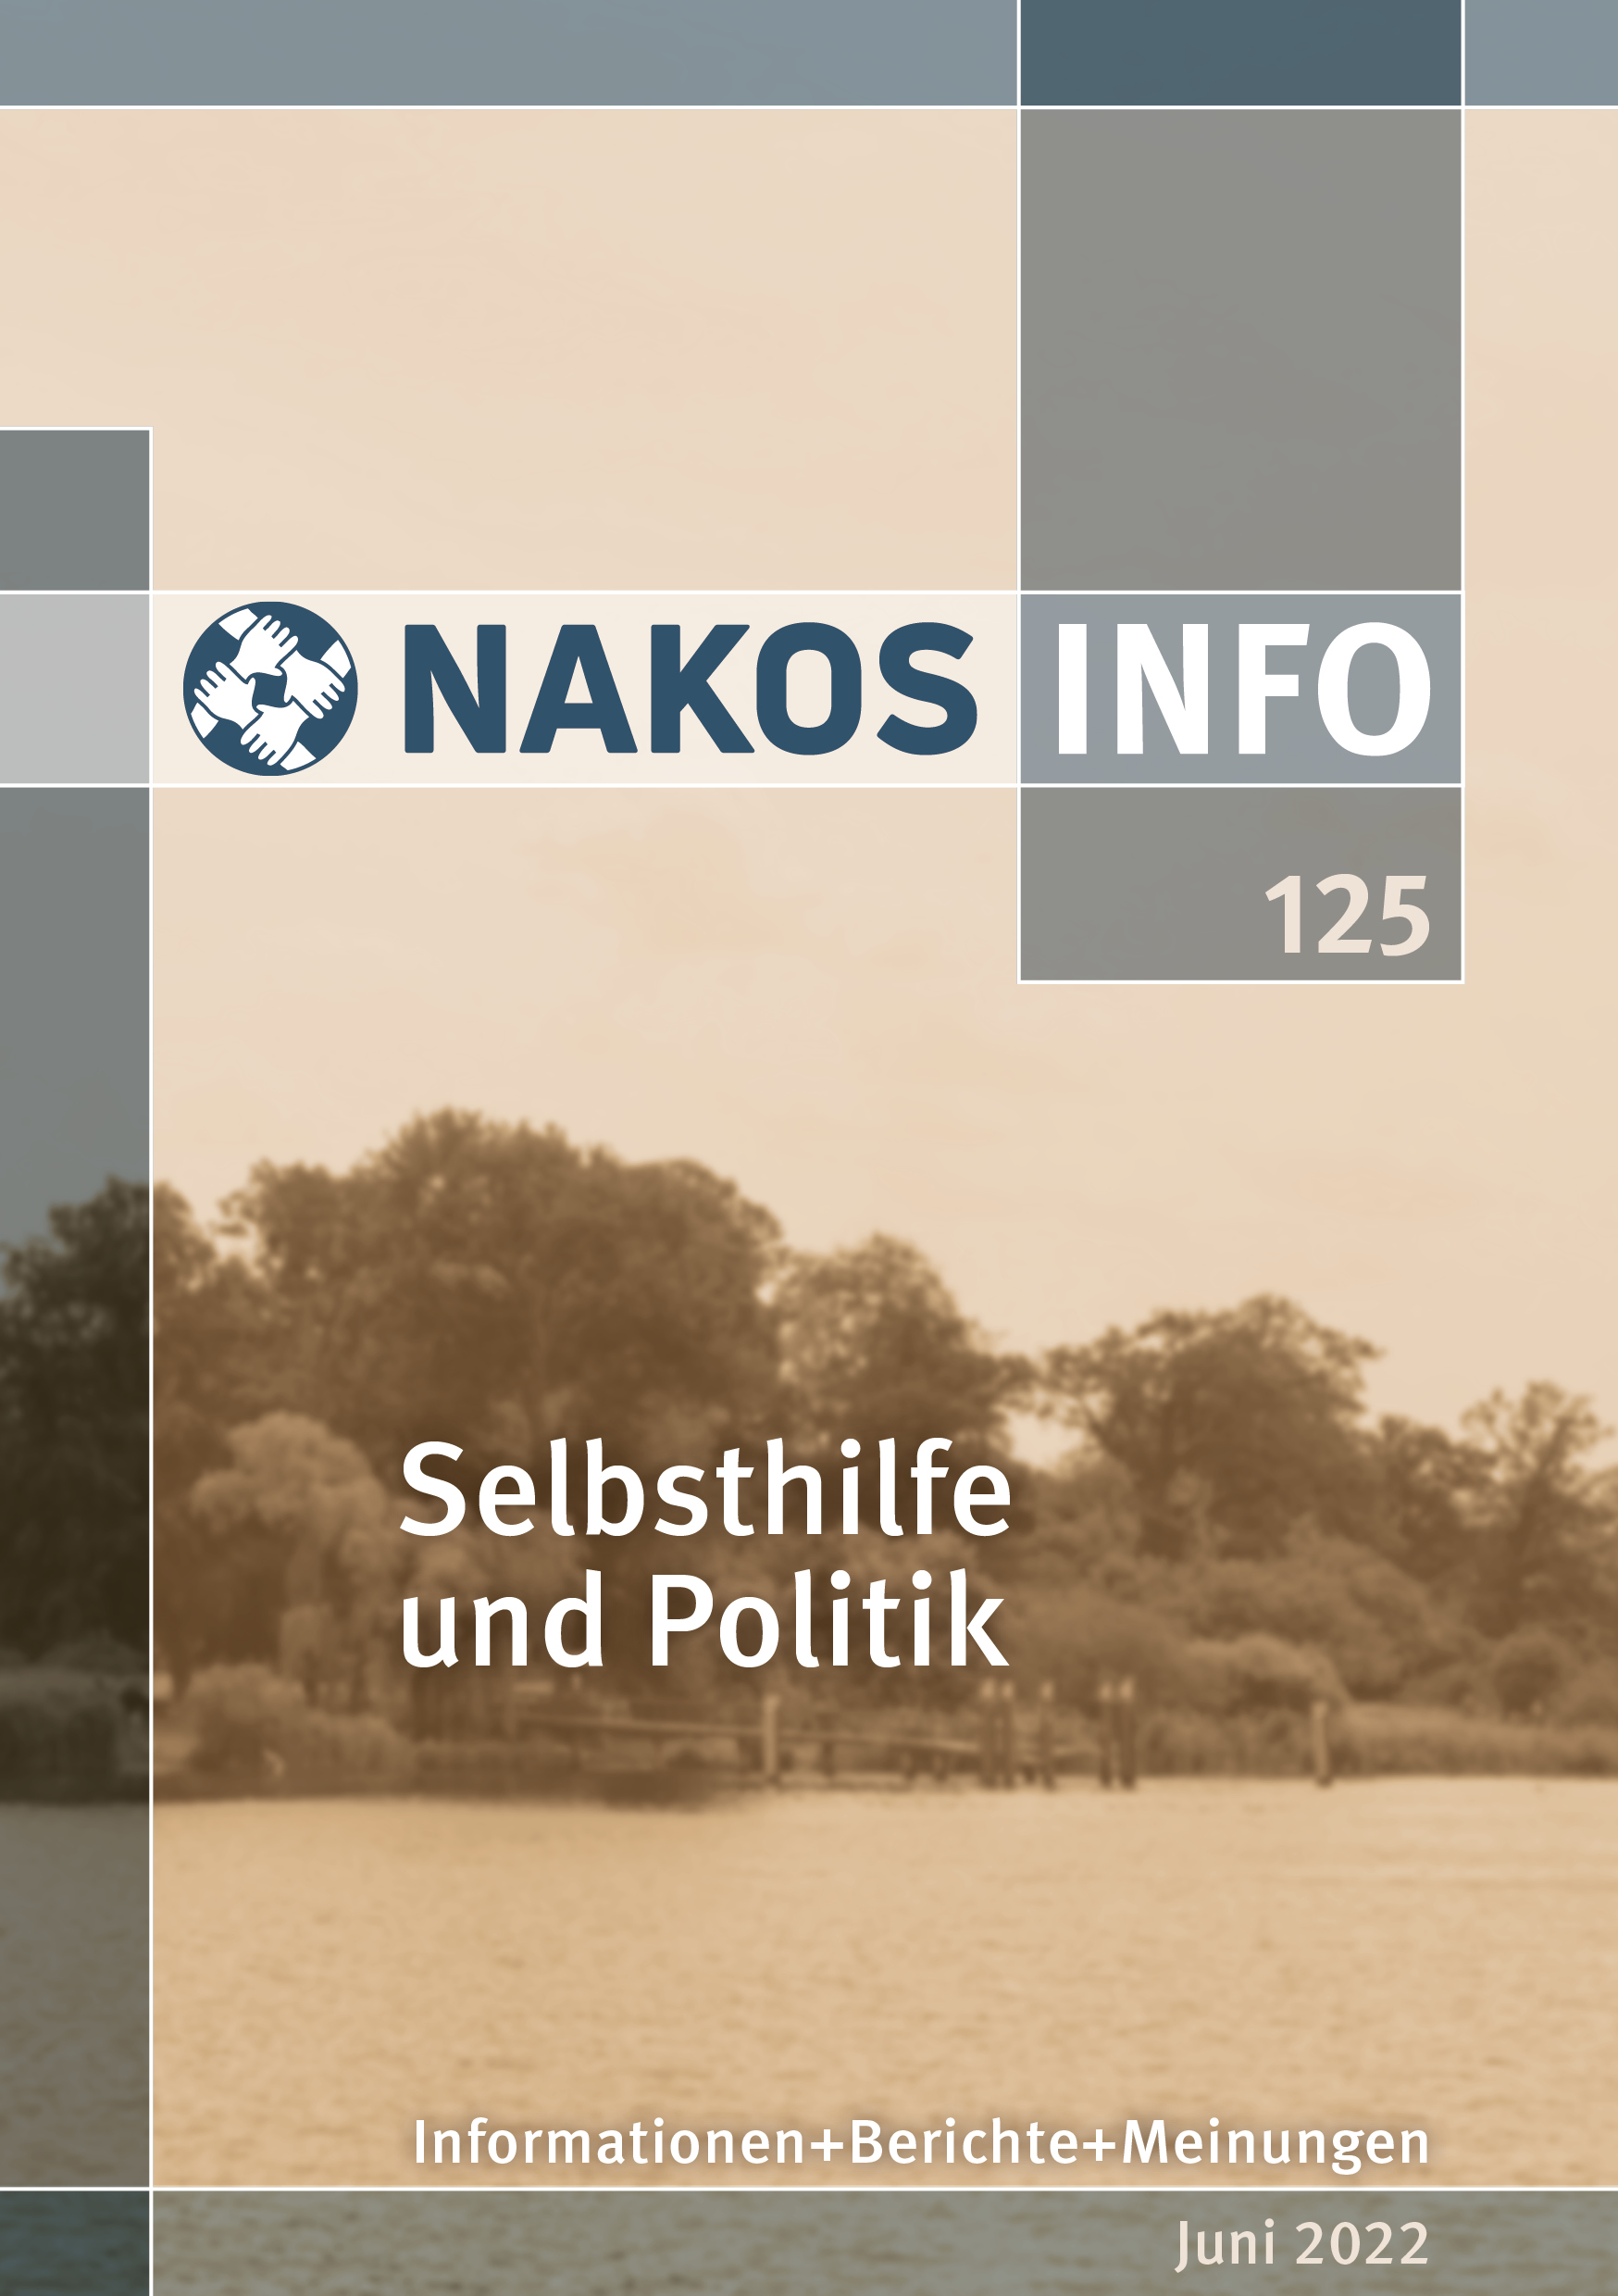 Broschüren-Vorderseite mit dem Titel „NAKOS INFO 125: Selbsthilfe und Politik“